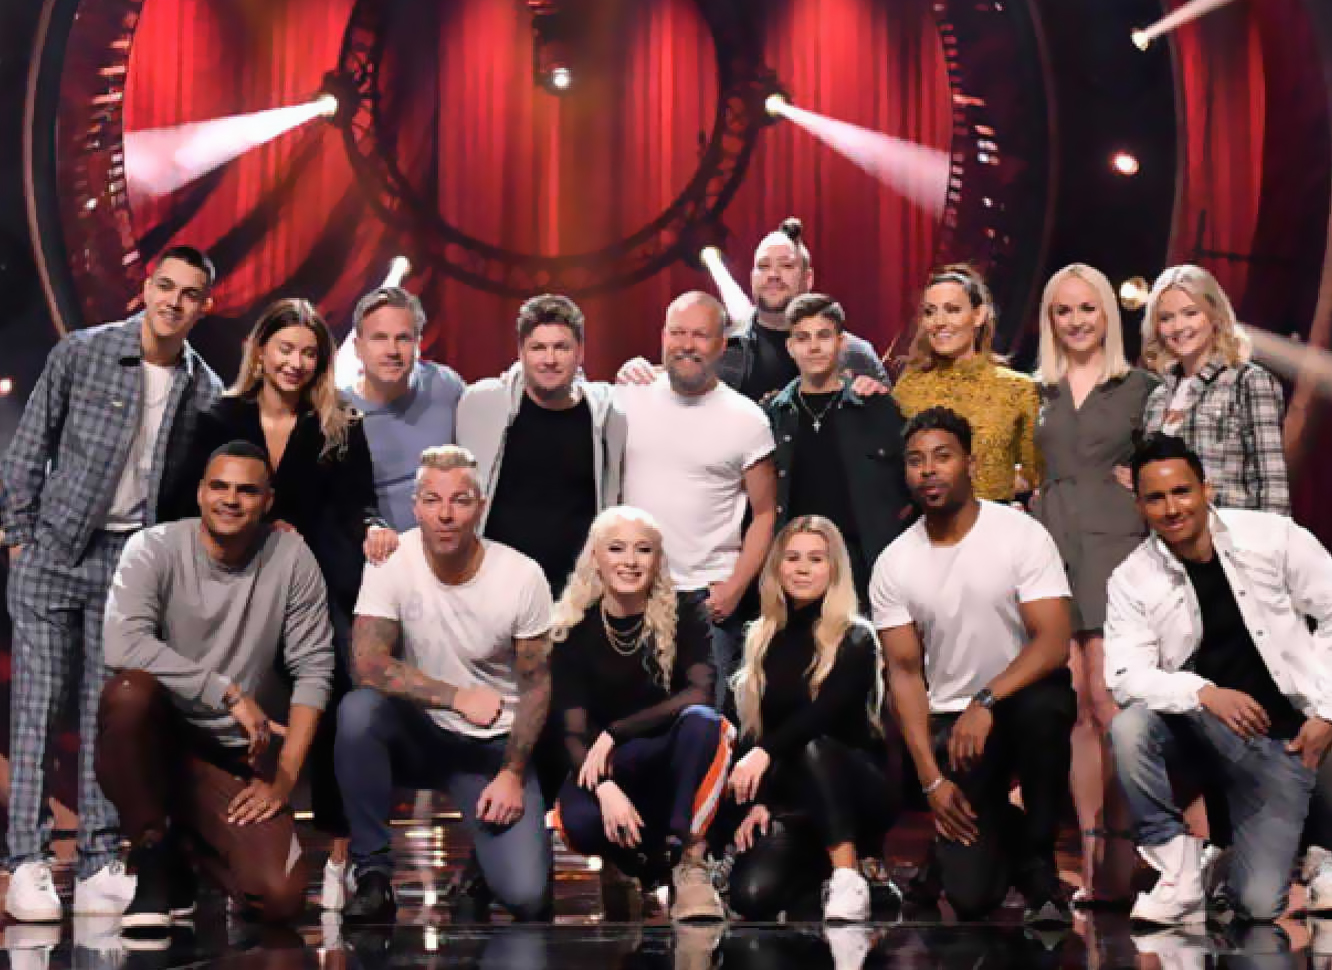  Melodifestivalen 2019 | Gala Final | Pros y contras de cada candidatura